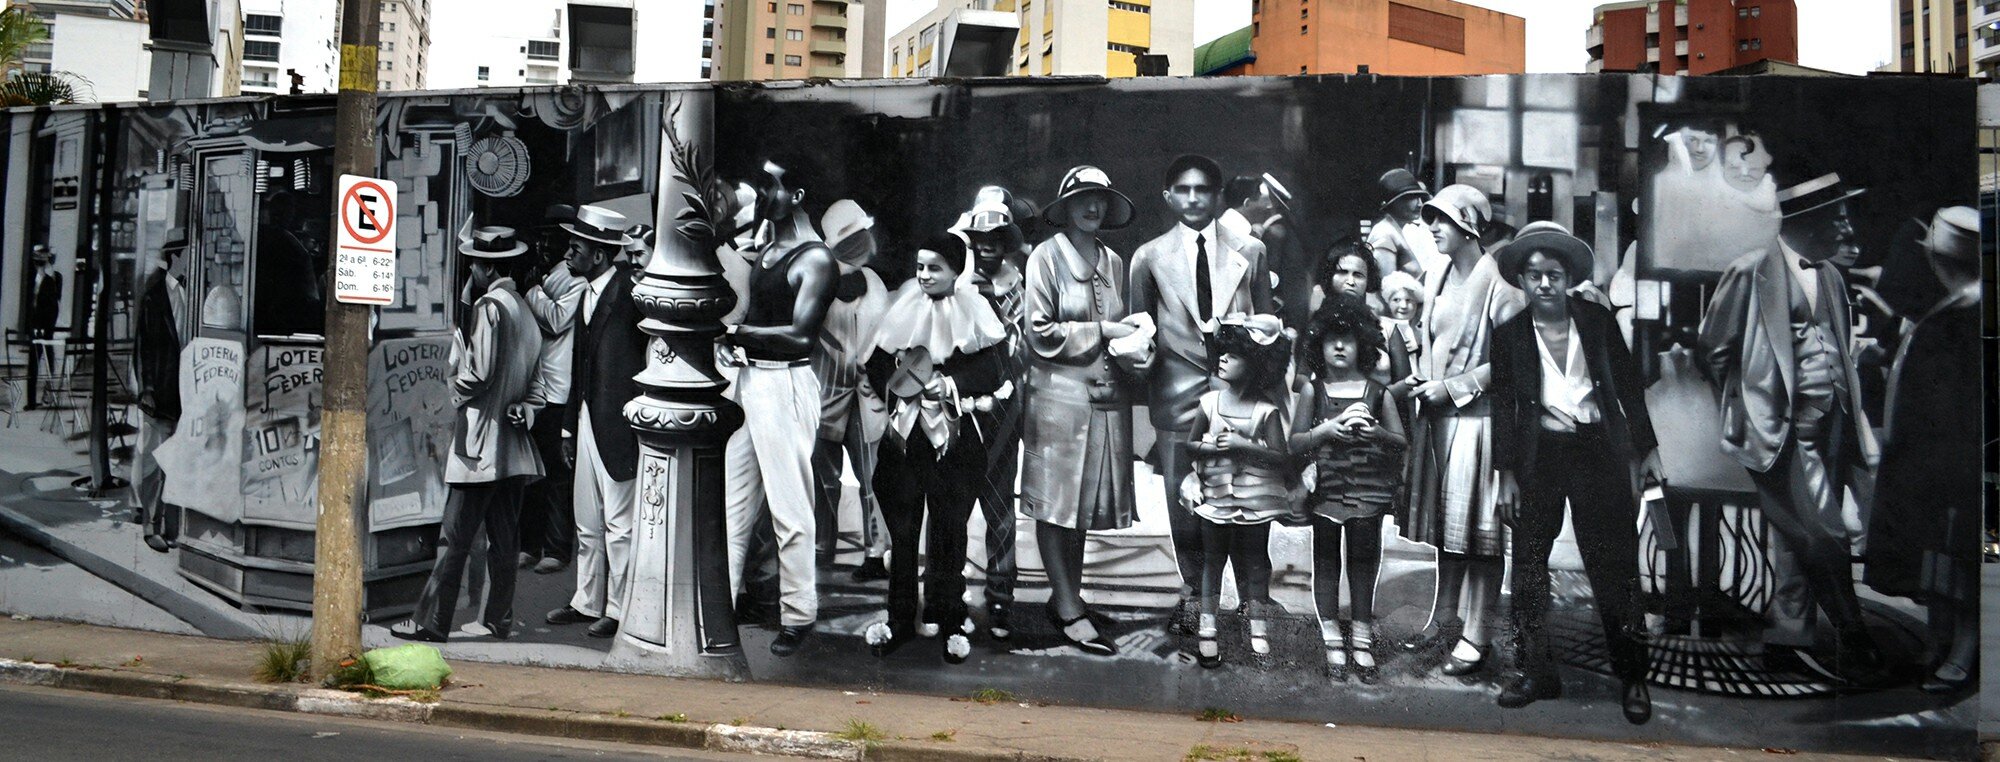 «Ювентус» представил четвертую форму. Она создана совместно с известным бразильским уличным художником